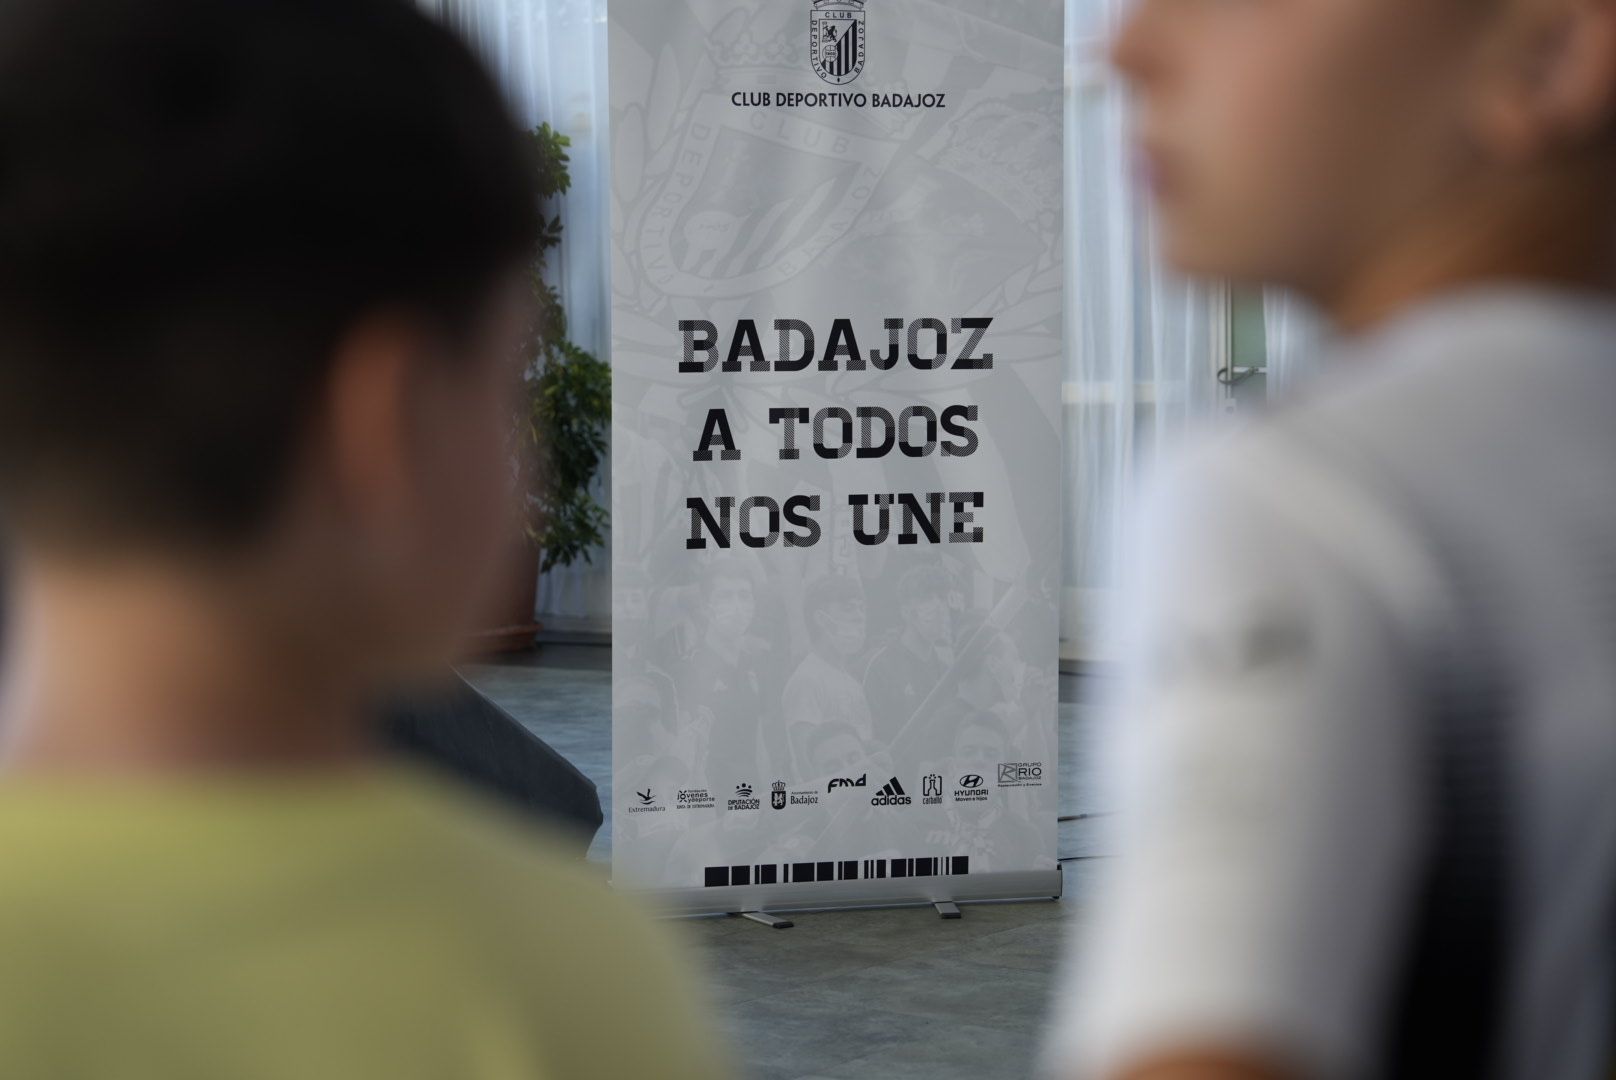 El Badajoz lanza una apuesta extrema para captar abonados